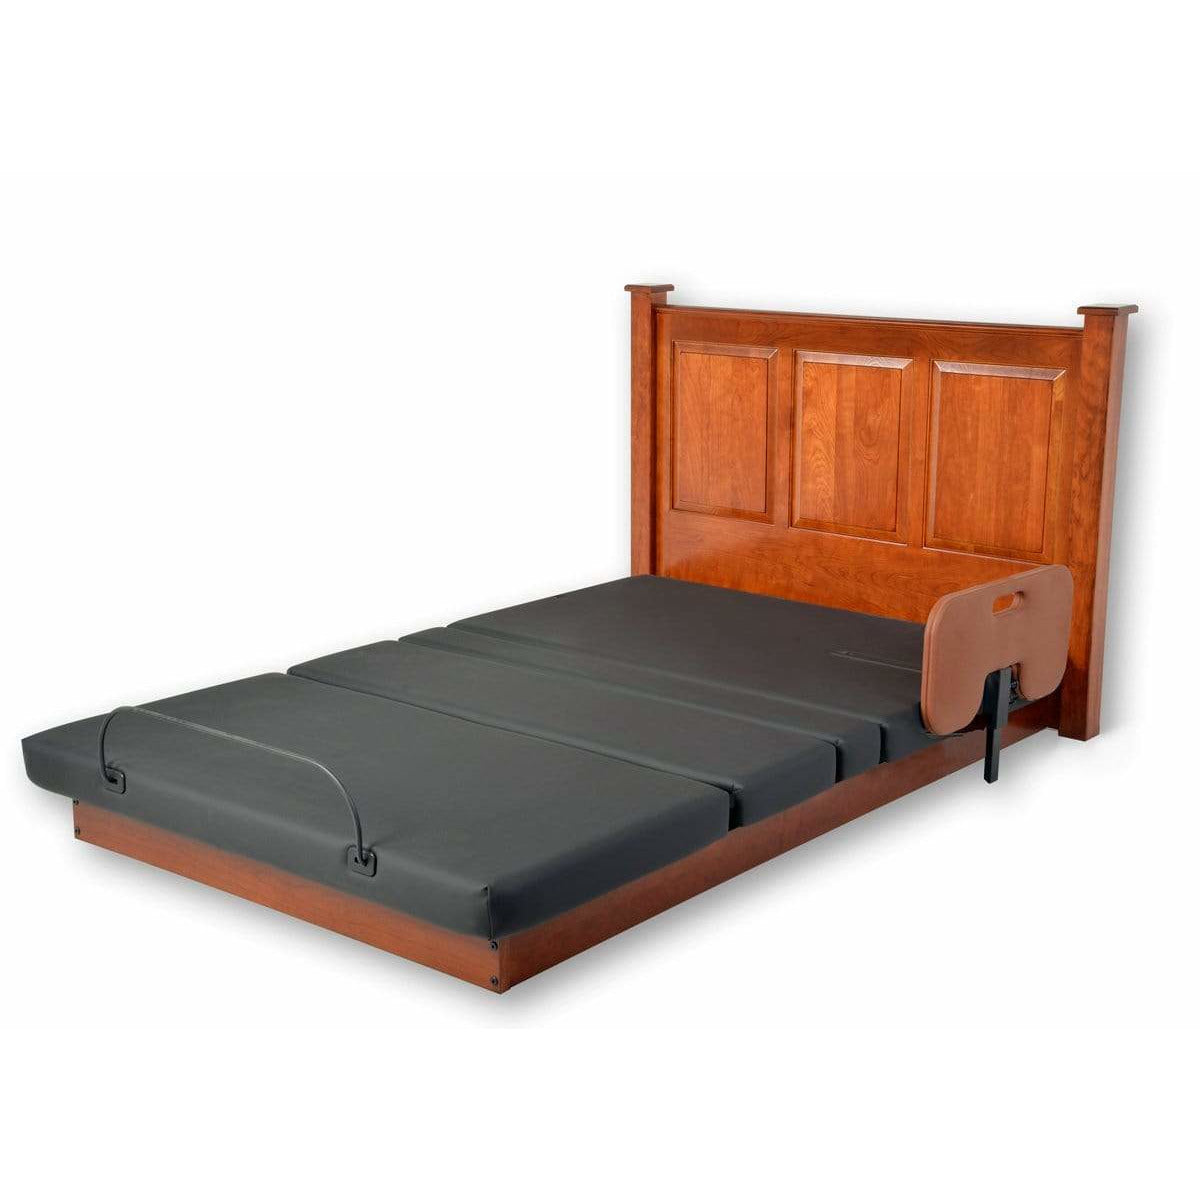 Assured Comforts Hi-Low Adjustable Beds Platform Series Hi-Low Adjustable Beds by Assured Comfort®